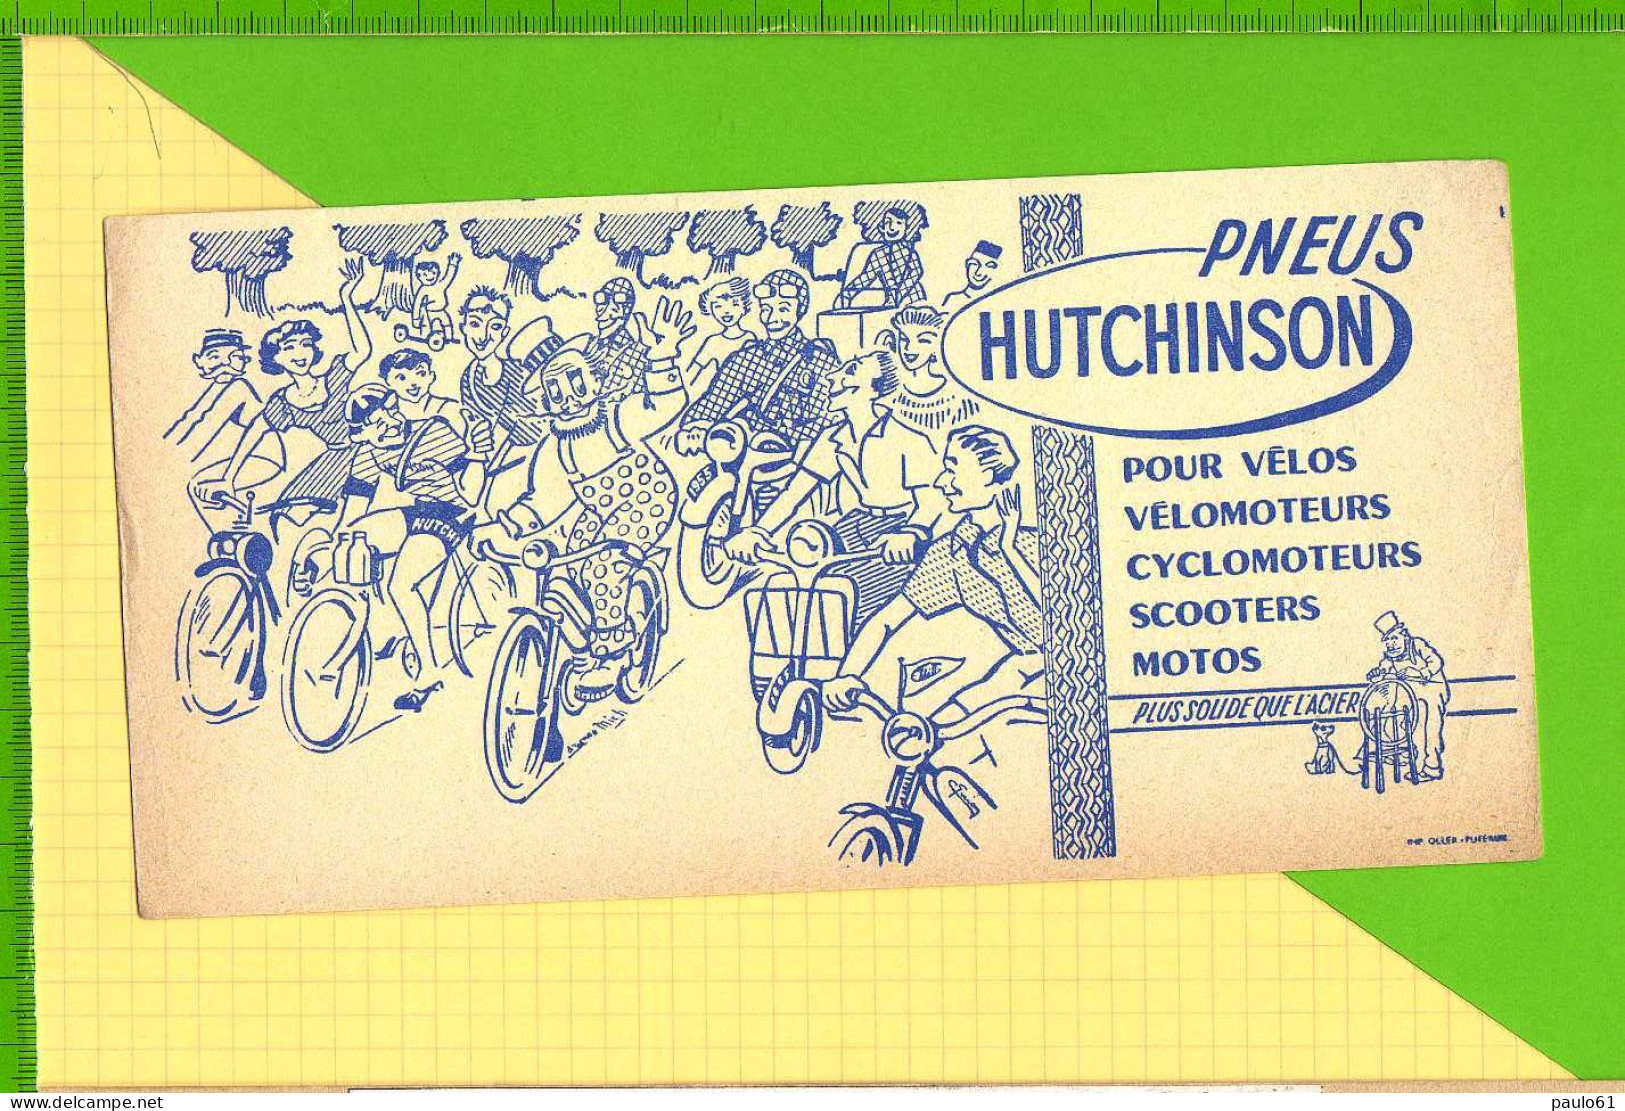 BUVARD & Blotting Paper :  Pneus HUTCHINSON  Velo Velomoteur Scooter Signé Mich Plus Solide Que L'Acier - Moto & Vélo